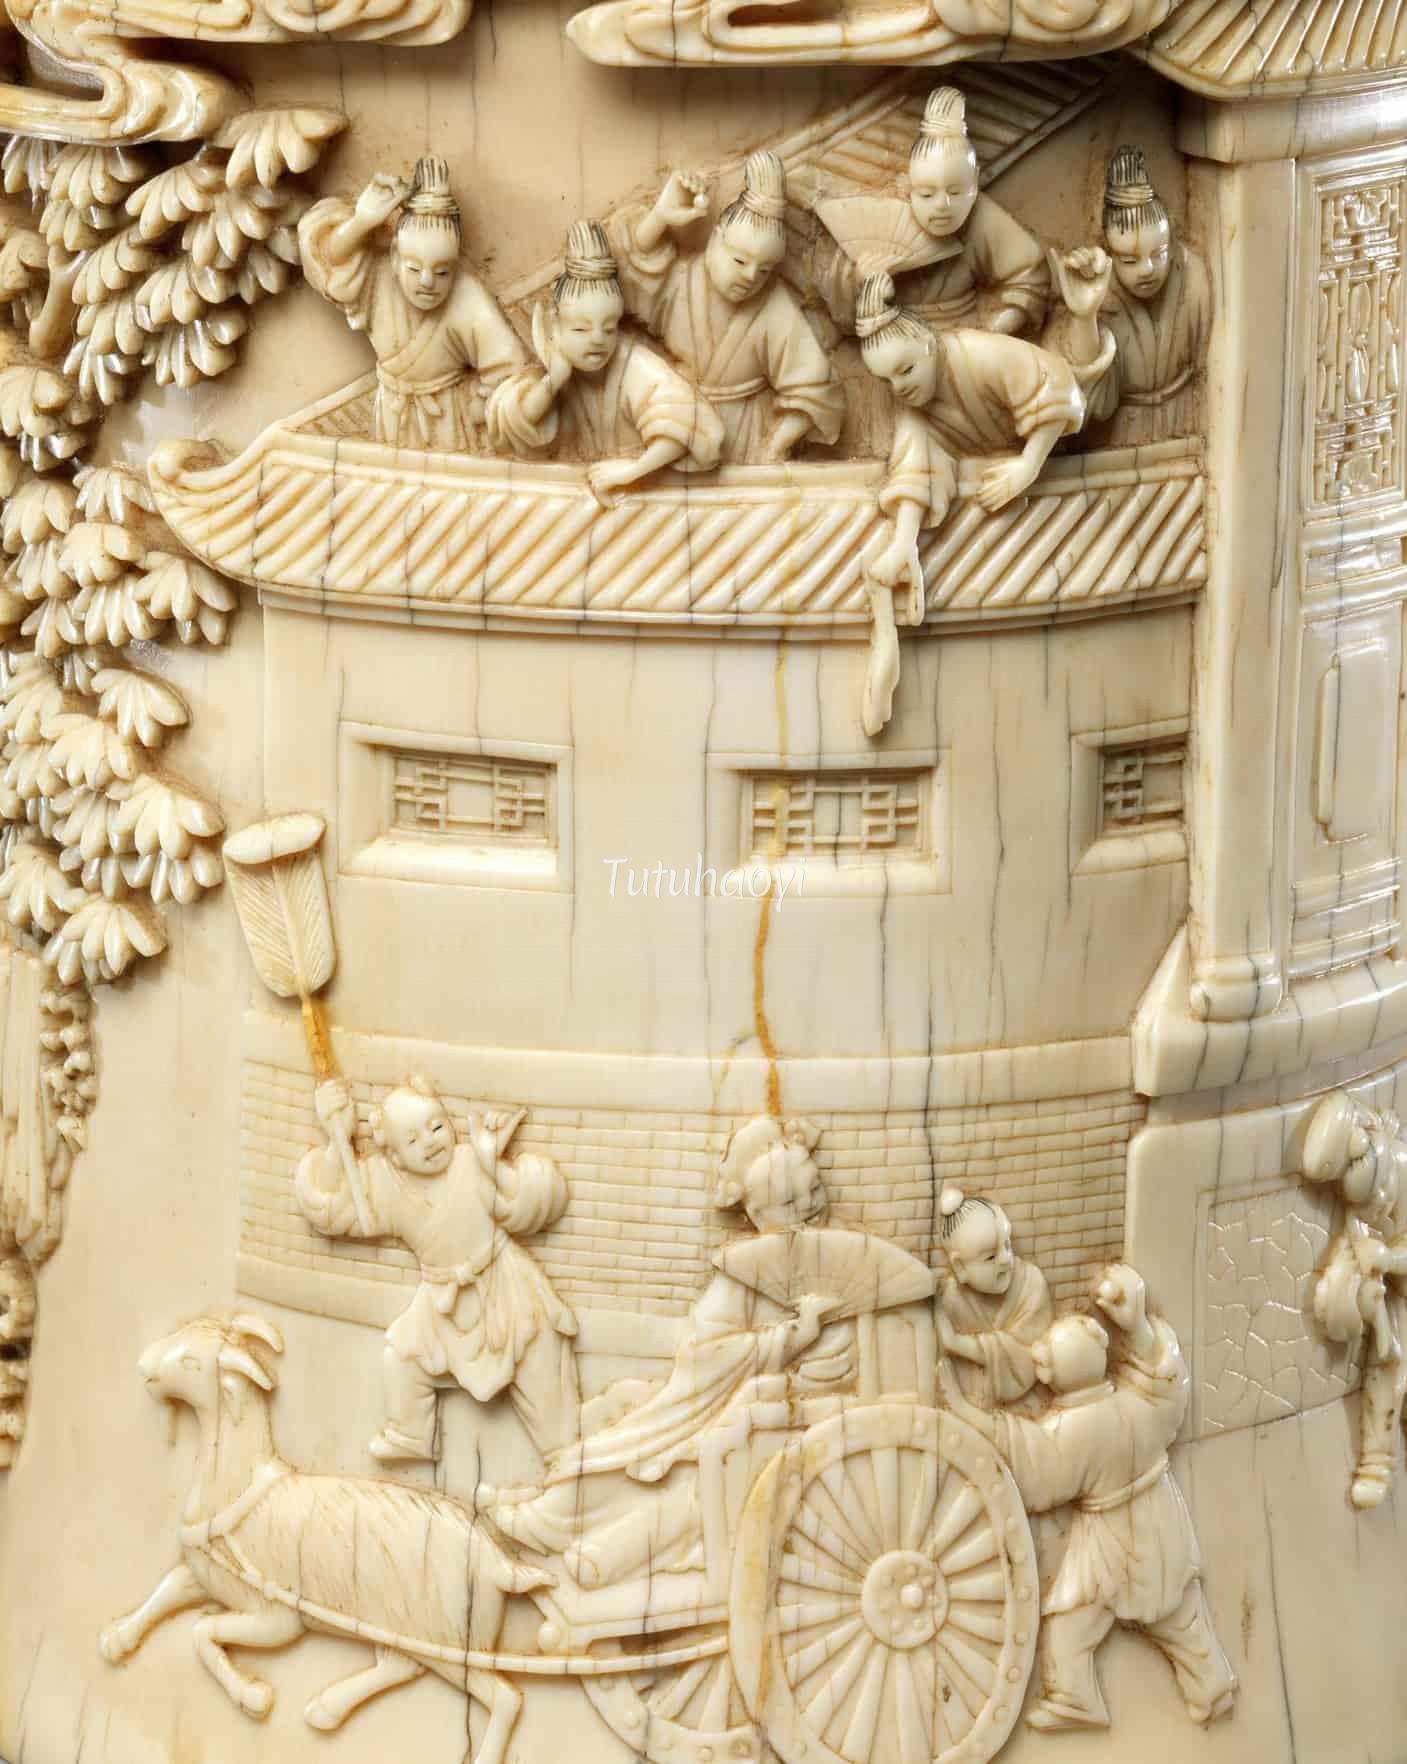 ivory brush holder from The Metropolitan Museum of Art, New York